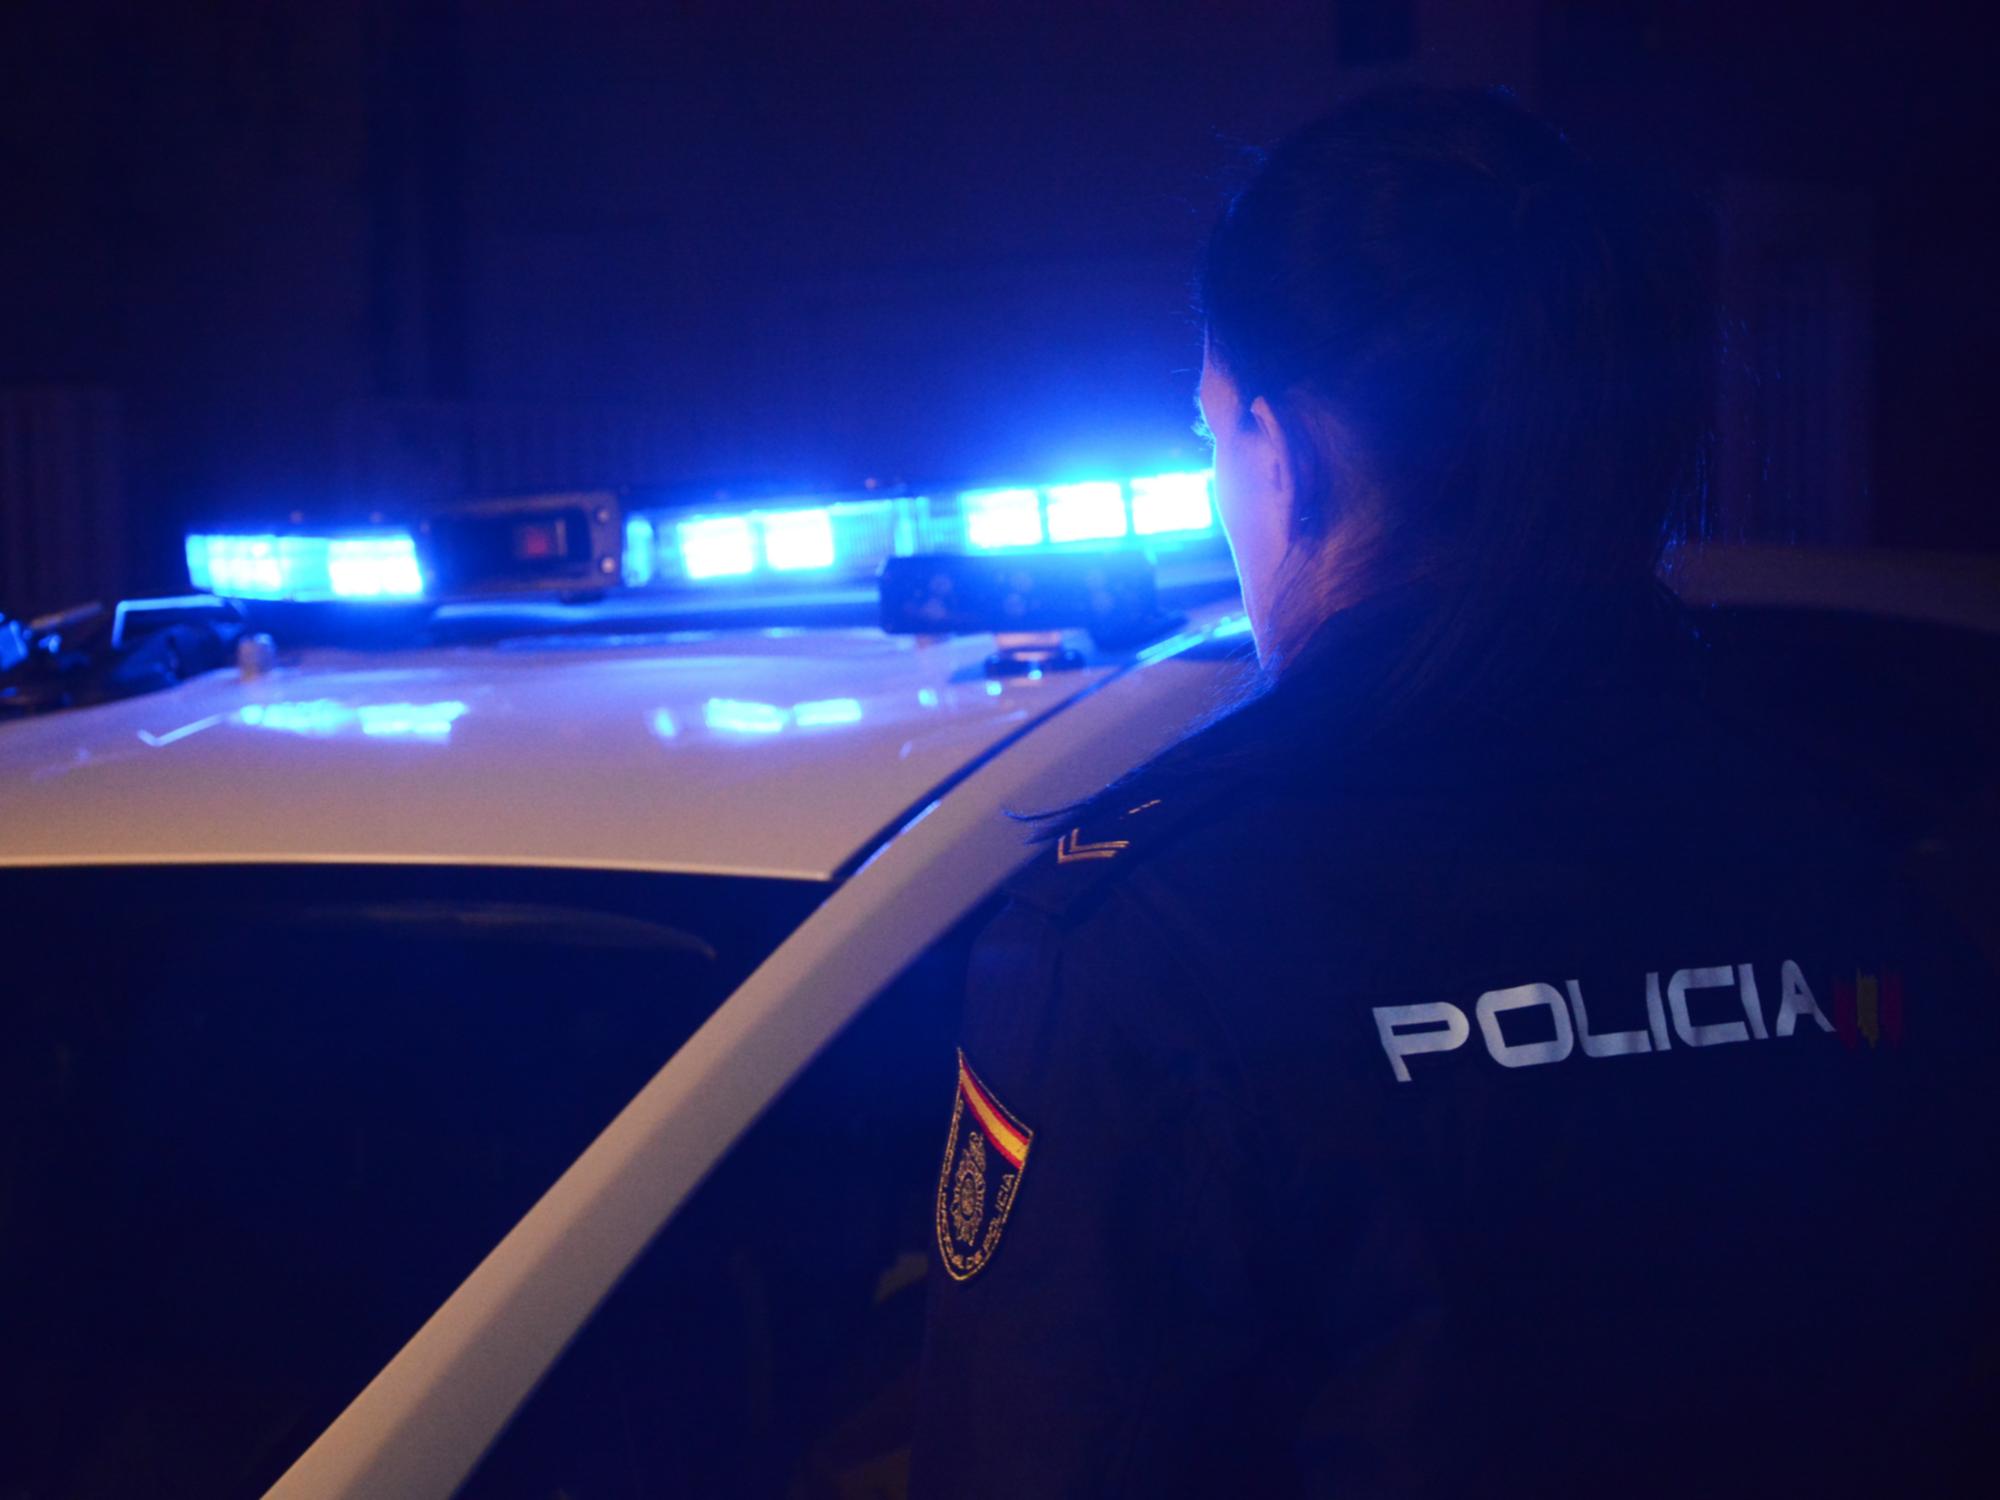 Imagen de las luces de sirena de un vehículo de la policía nacional